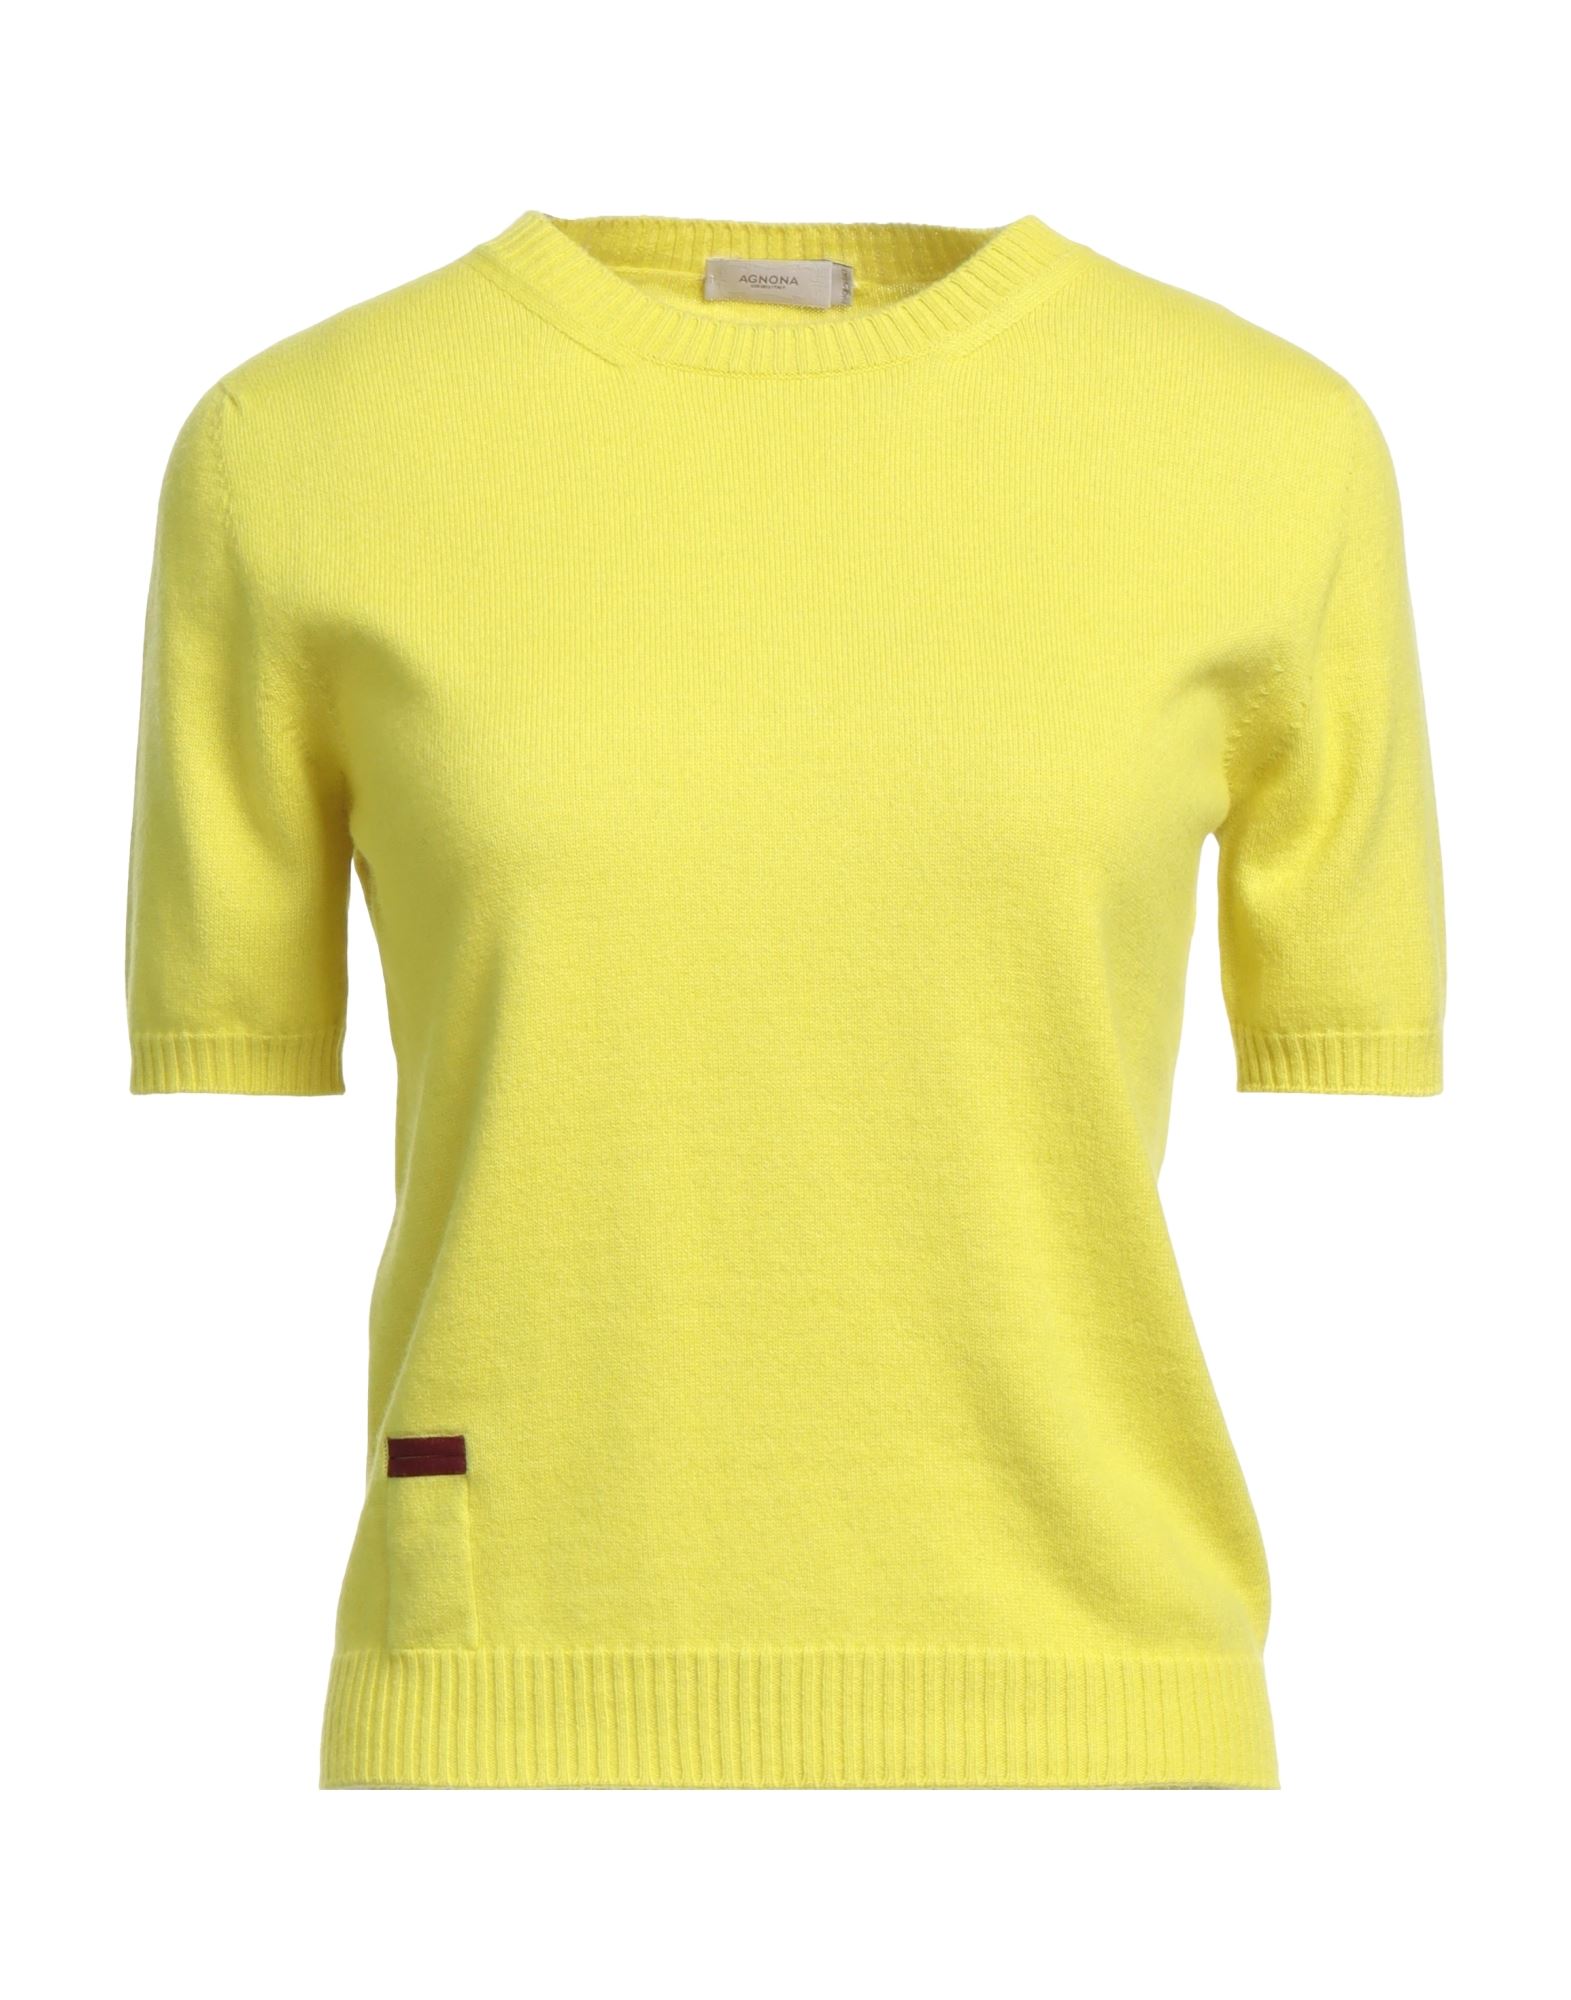 Agnona Sweaters In Yellow